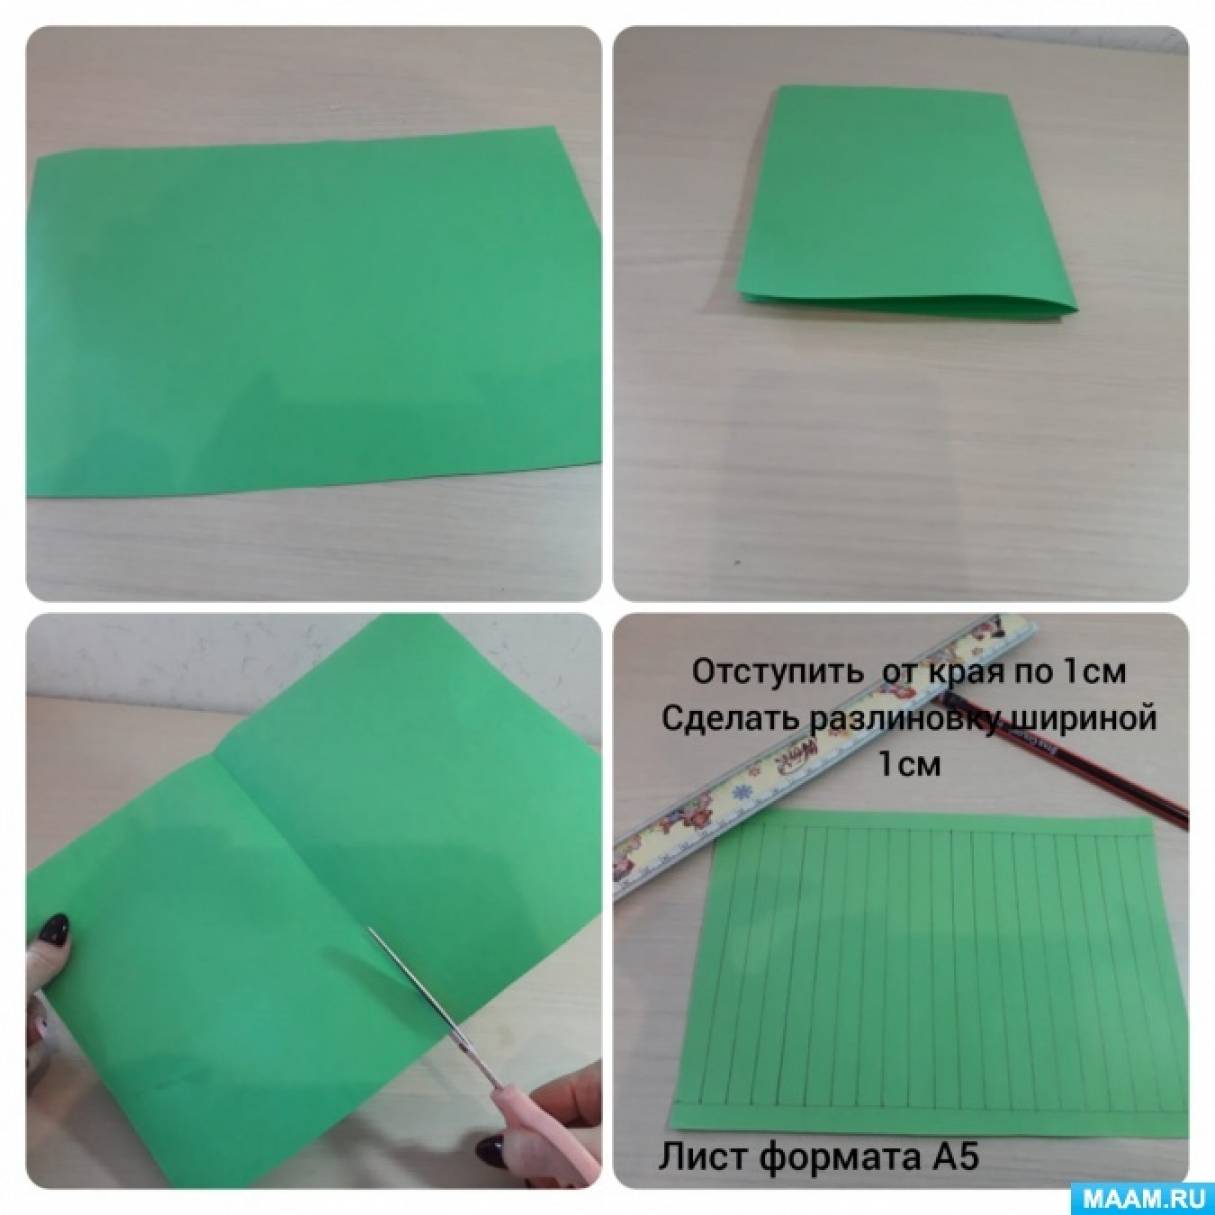 Мраморный пол из бумаги: как сделать оригинальное напольное покрытие